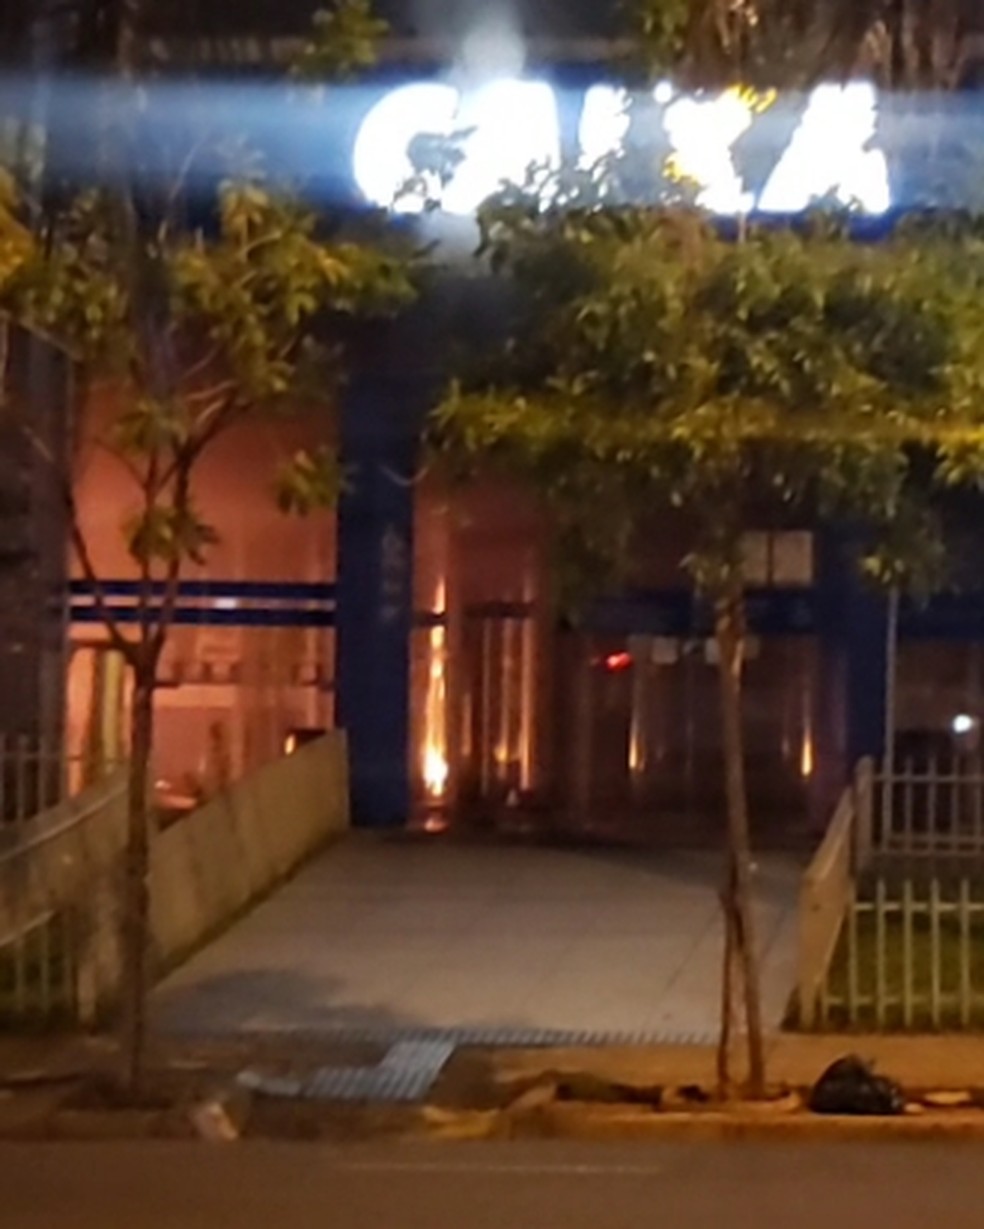 Princípio de incêndio danifica caixas eletrônicos em agência bancária em Rio Preto — Foto: Ellus Bruno